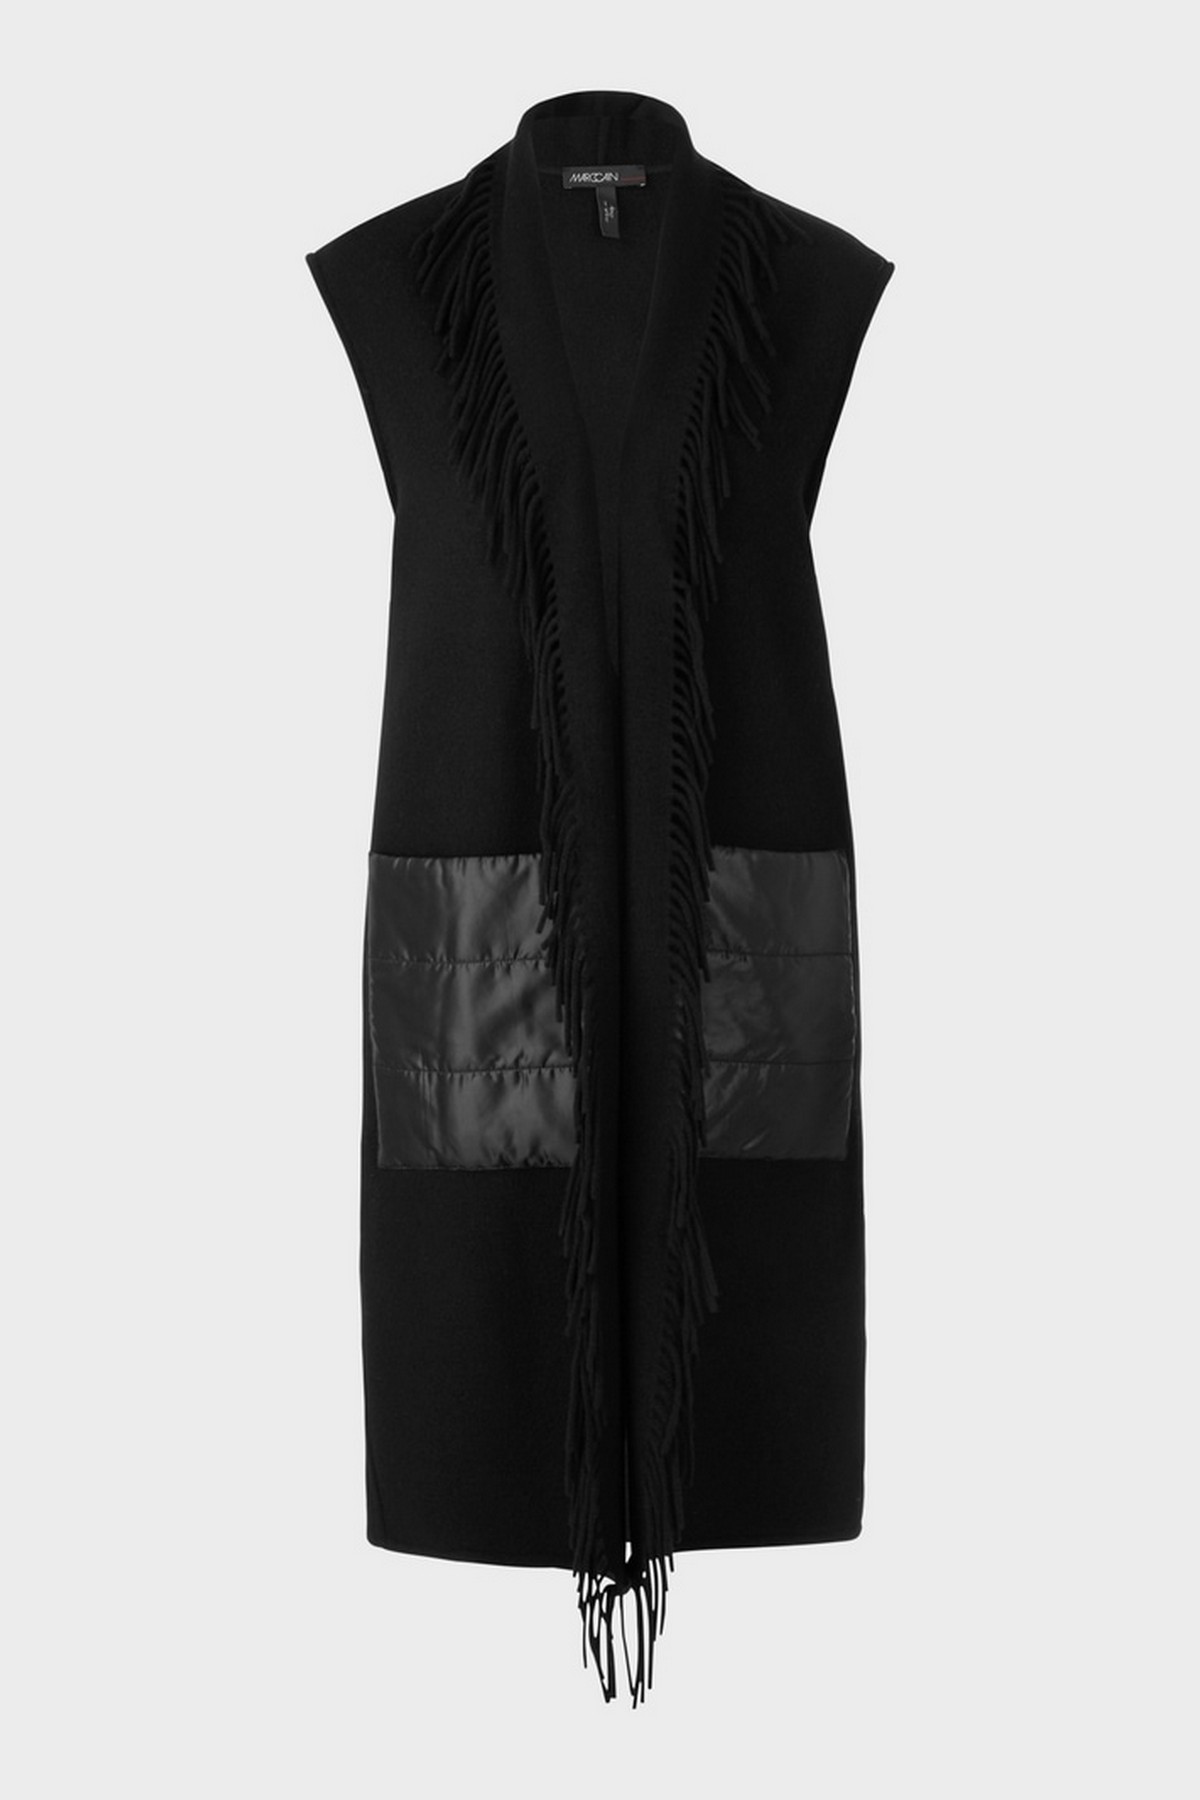 Mouwloze vest met franjes in de kleur zwart van het merk Marc Cain Collections